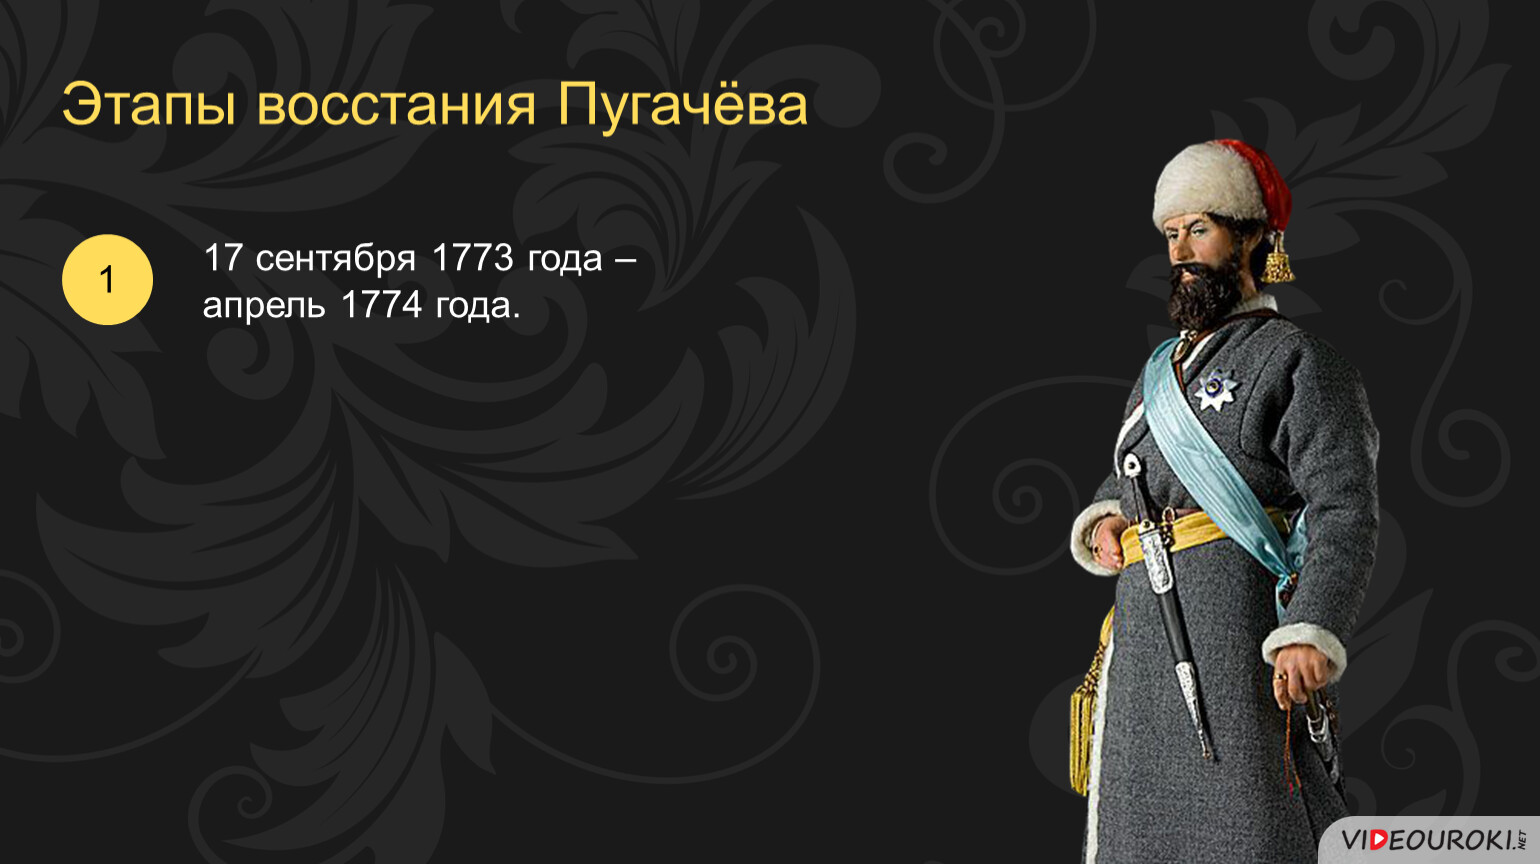 5 октября 1773. Пугачёв 17 сентября 1773. Восстание Пугачева. 12 Сентября 1774 года. 17 Сентября восстание Пугачева.